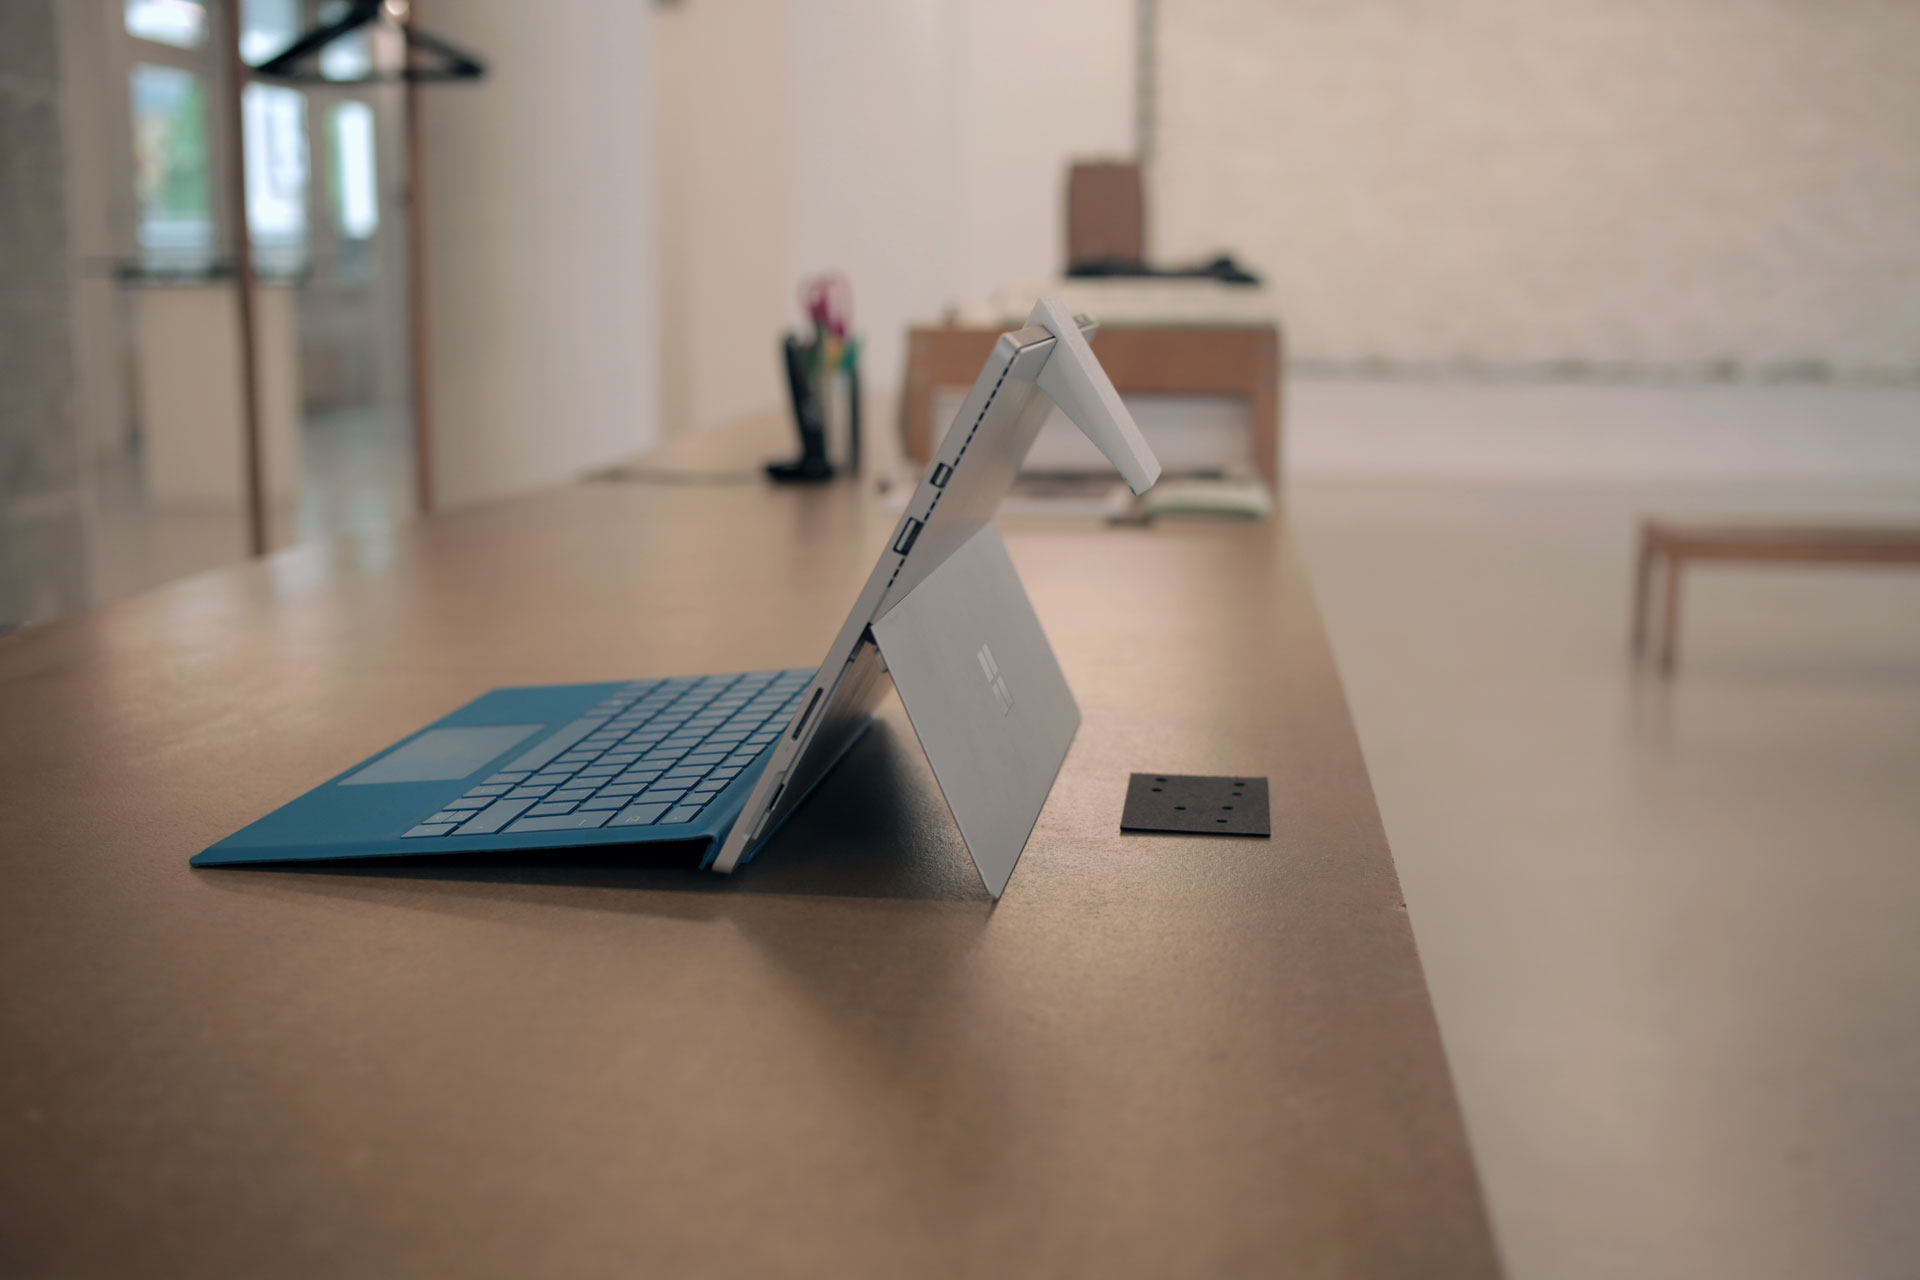  Дешевое DIY решение для превращения Microsoft Surface в надежный сканер 